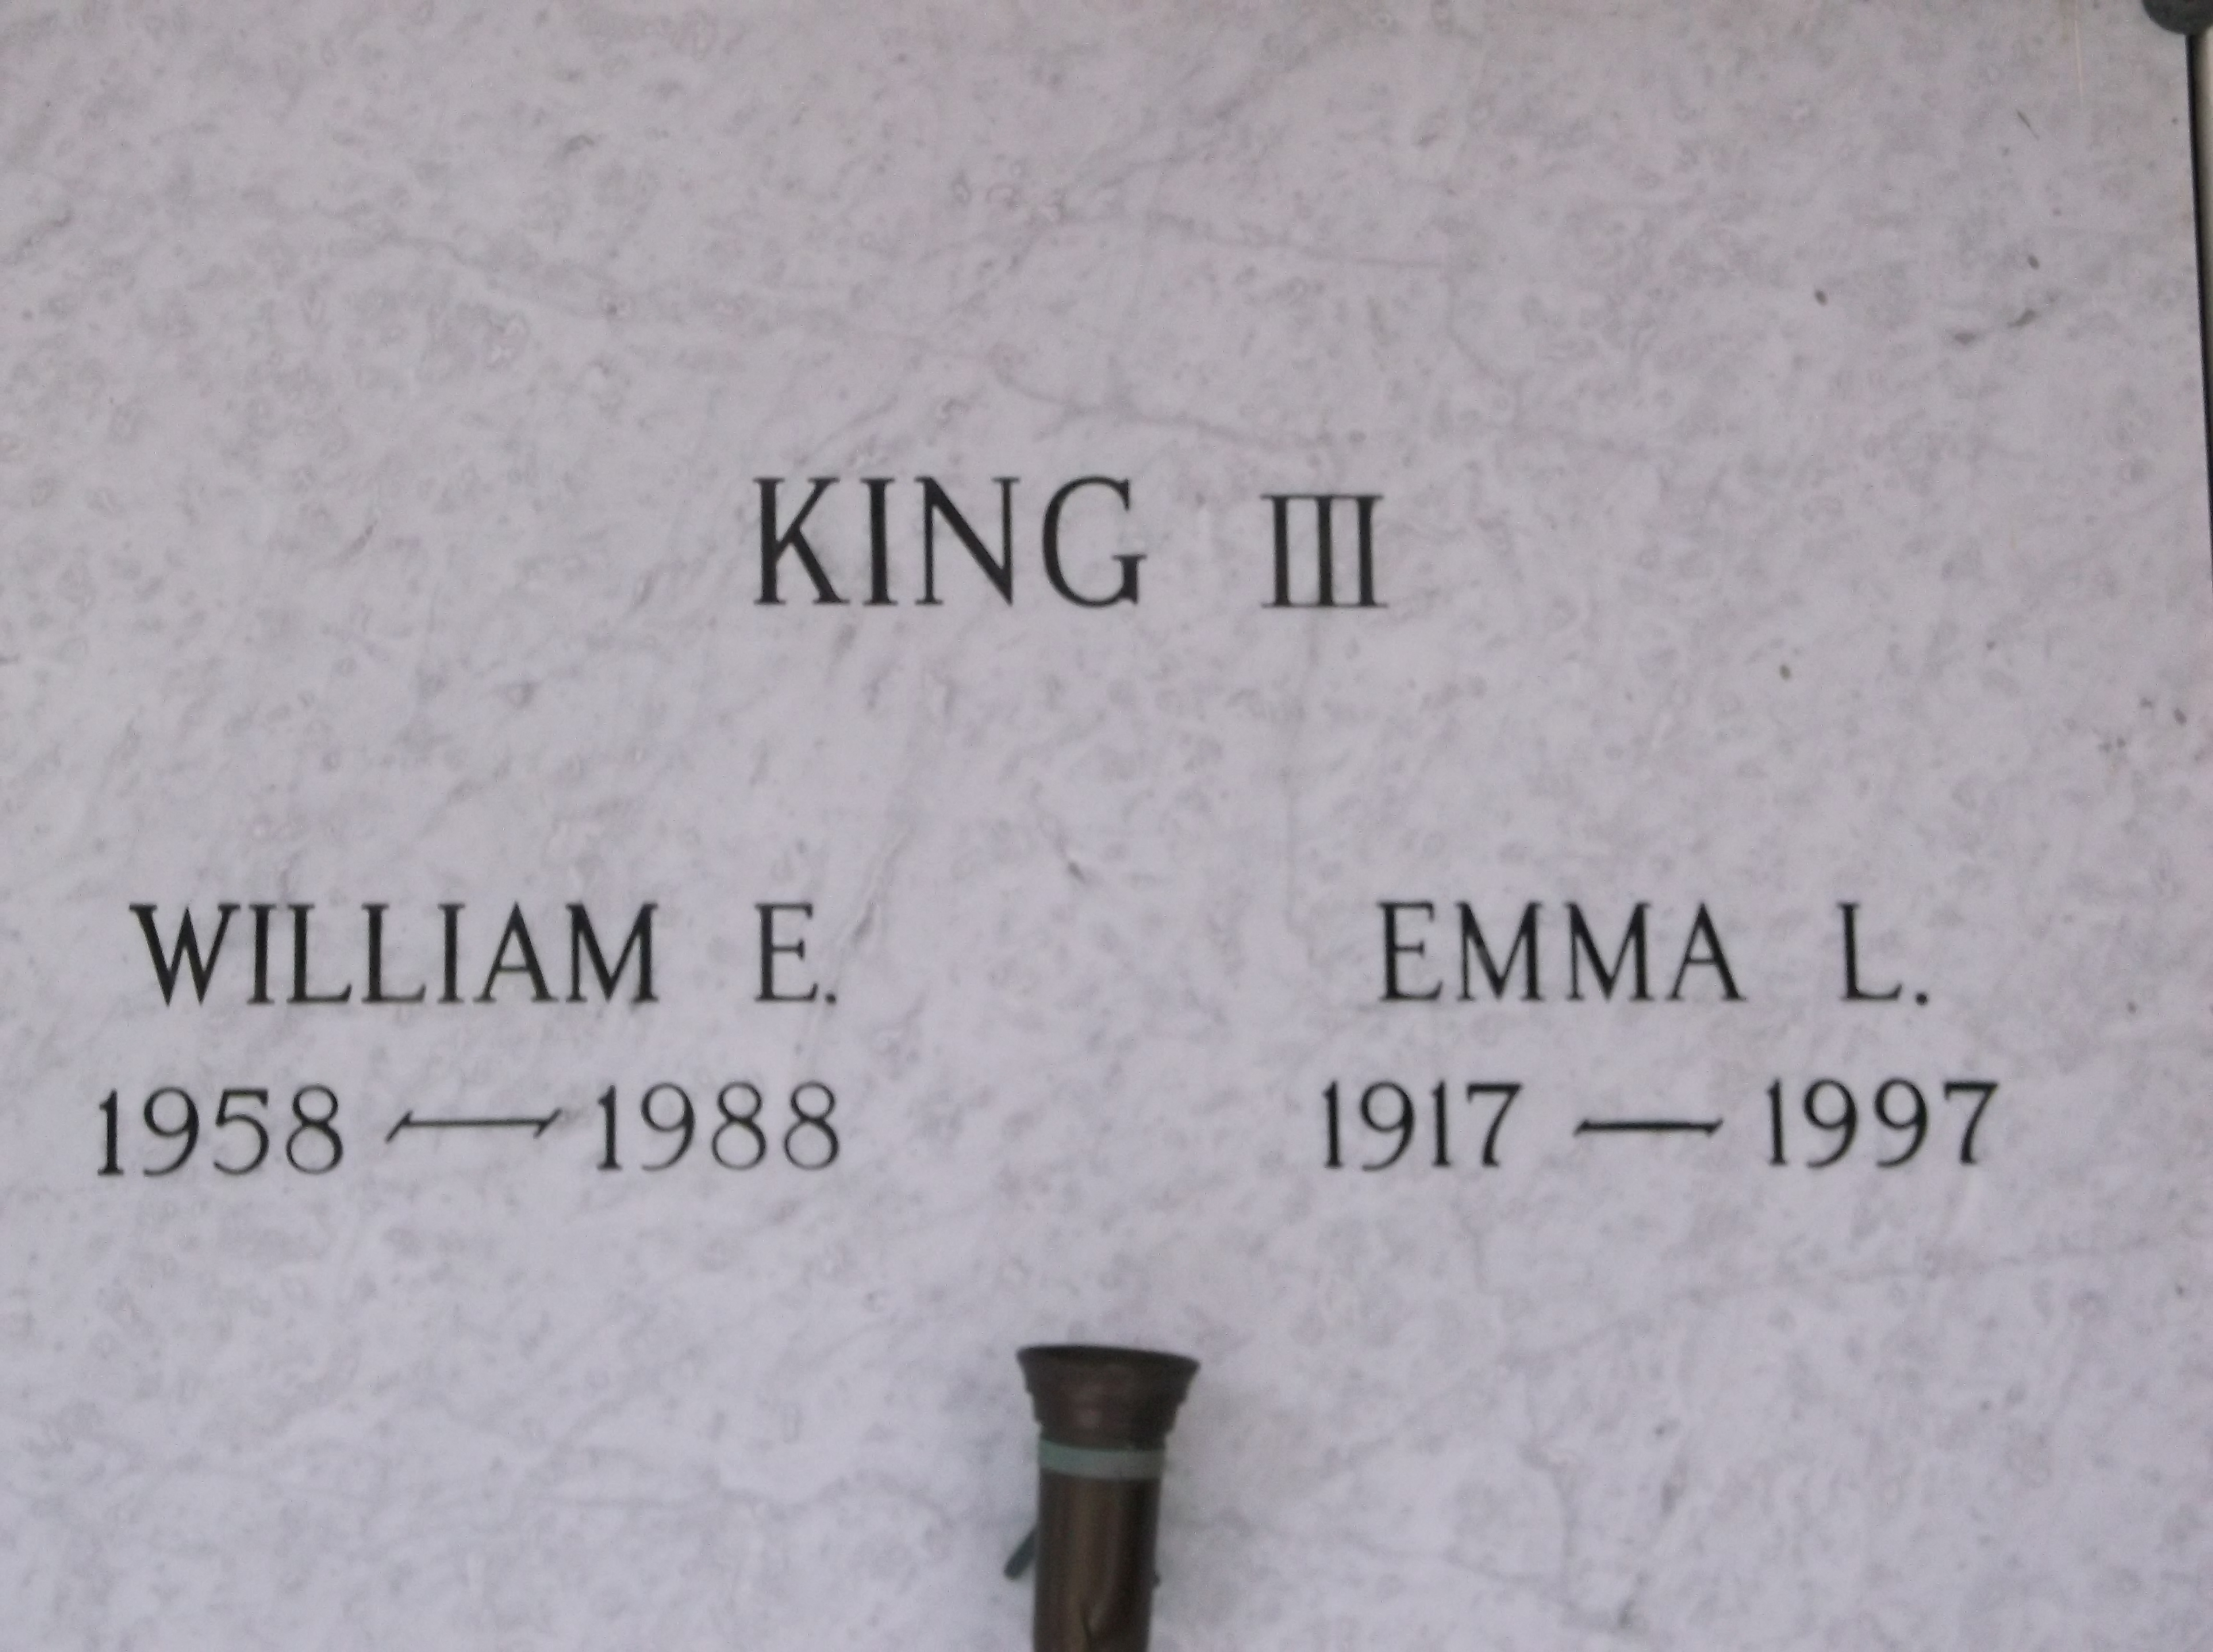 William E King, III